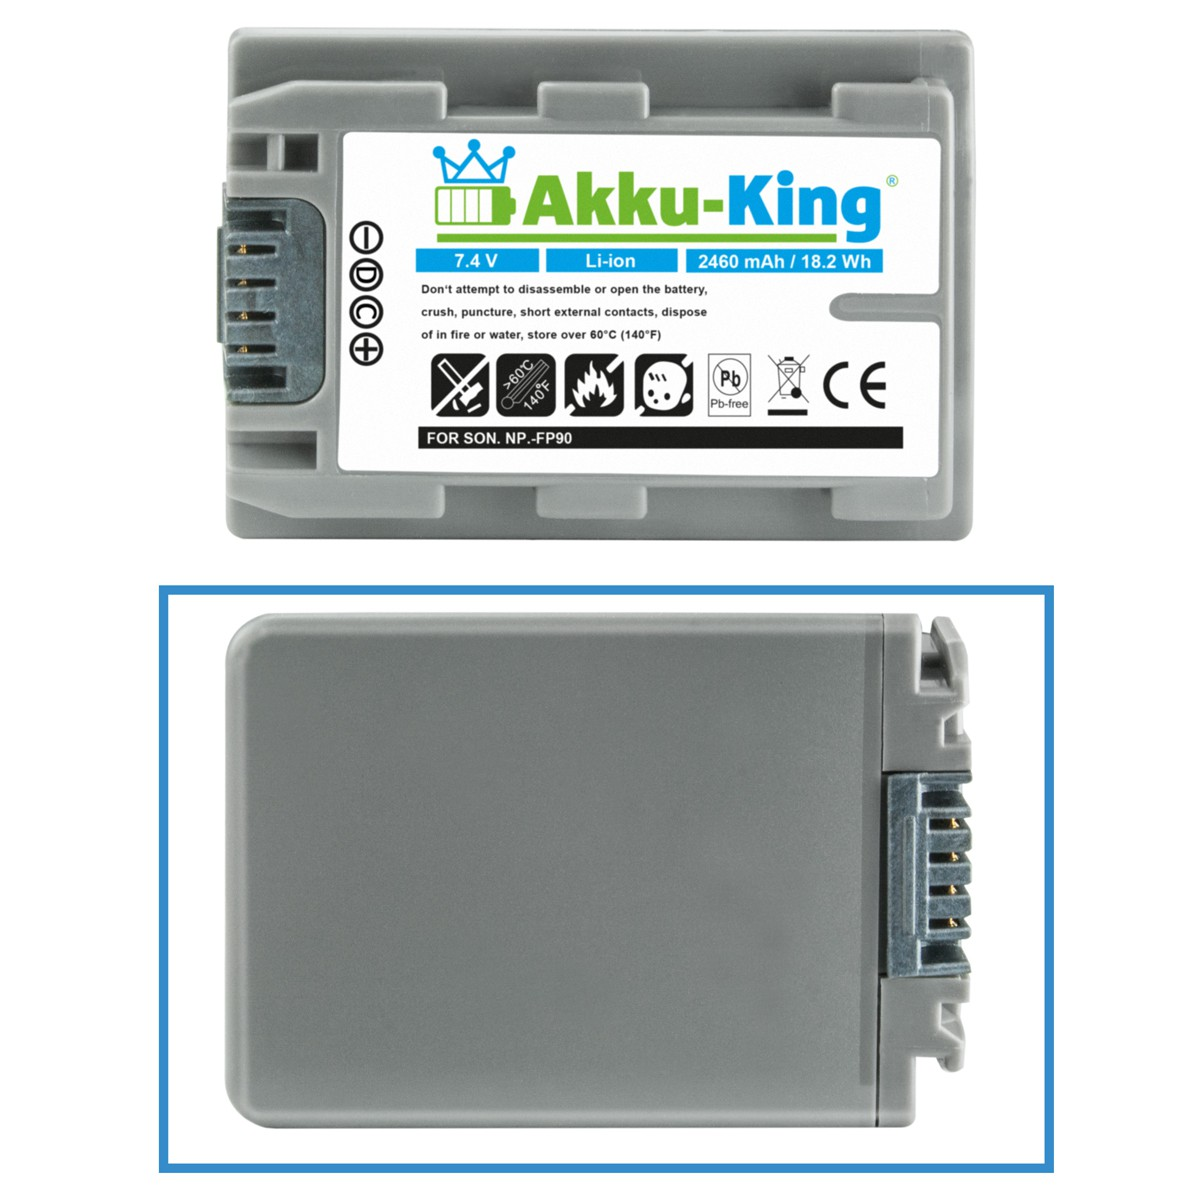 AKKU-KING Akku kompatibel mit Sony Li-Ion 2460mAh NP-FP90 Kamera-Akku, 7.4 Volt